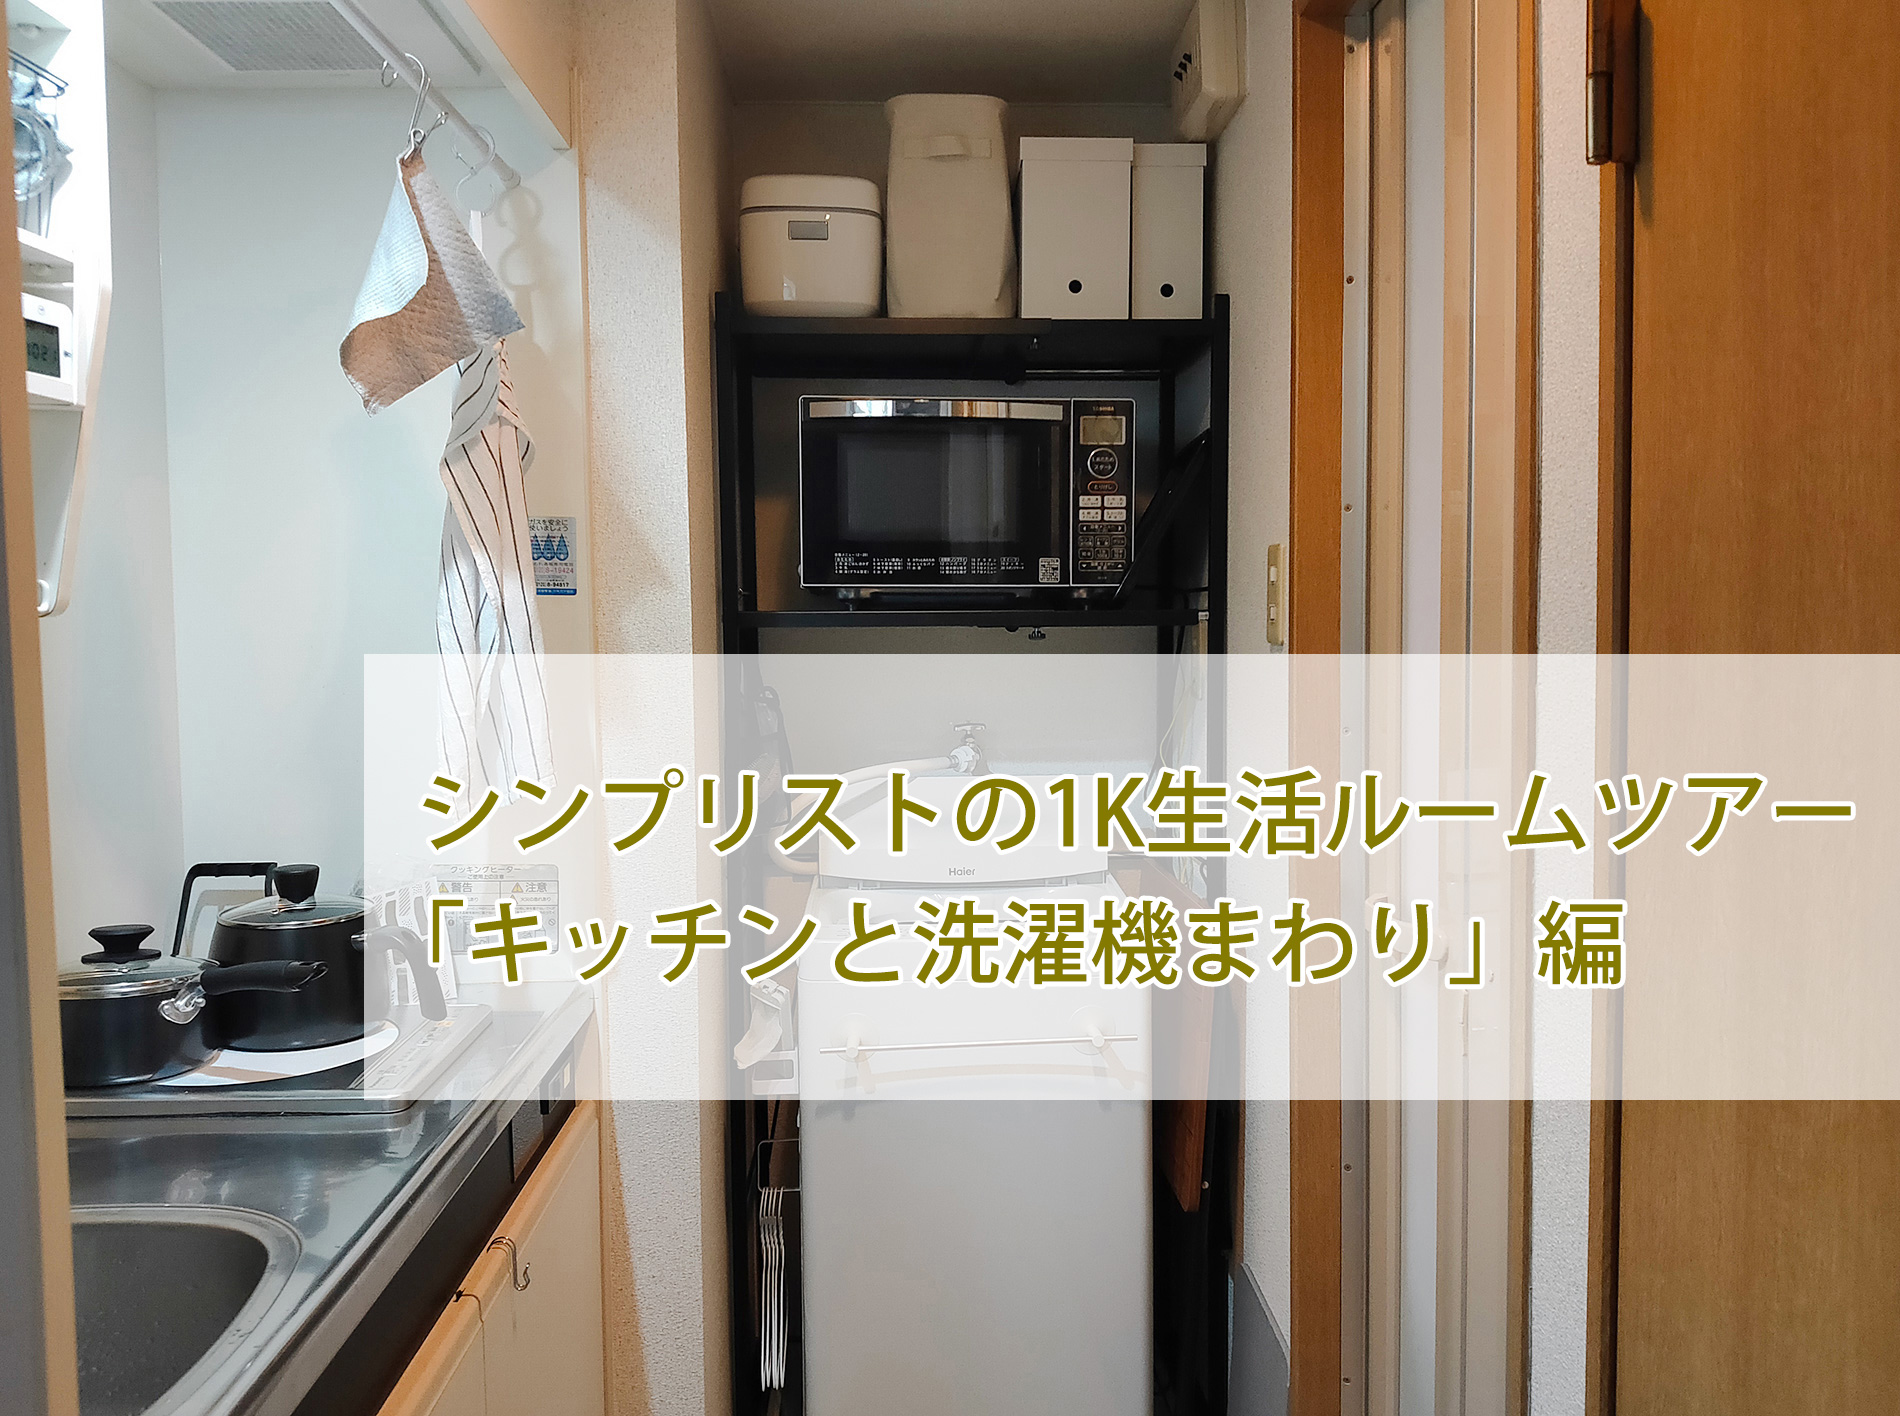 シンプリストの1K生活ルームツアー「キッチンと洗濯機まわり」編